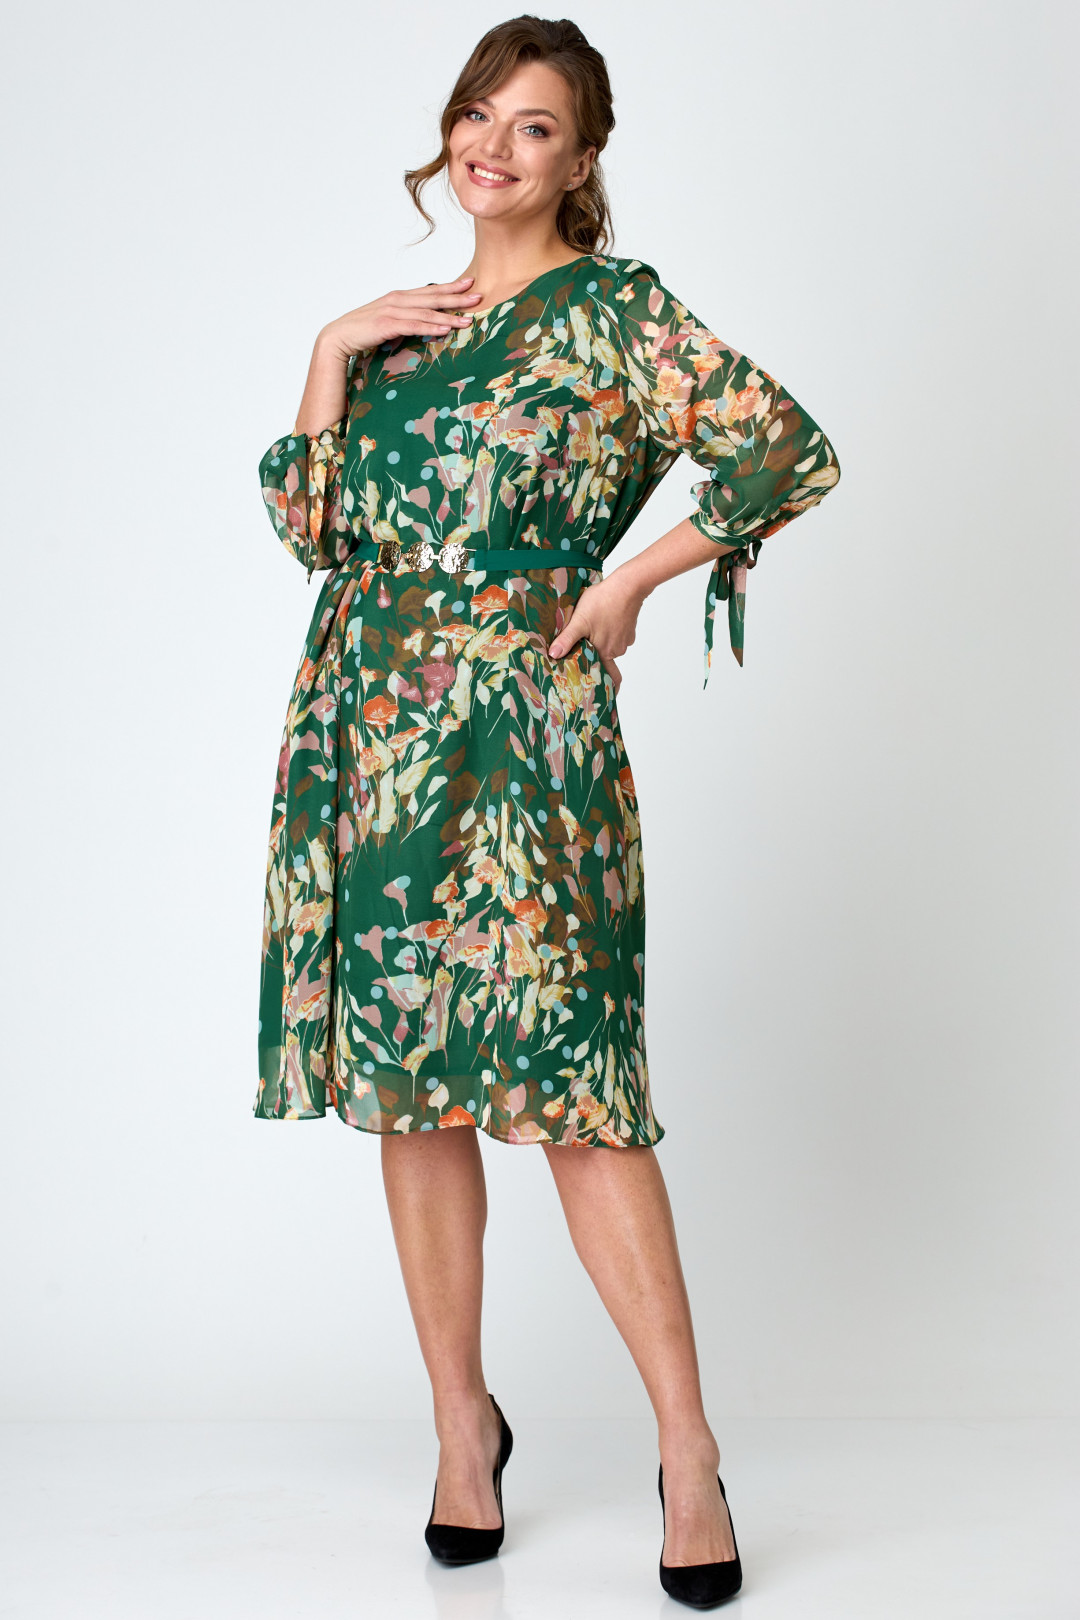 Платье Мишель Шик 2049 зеленый, цветы